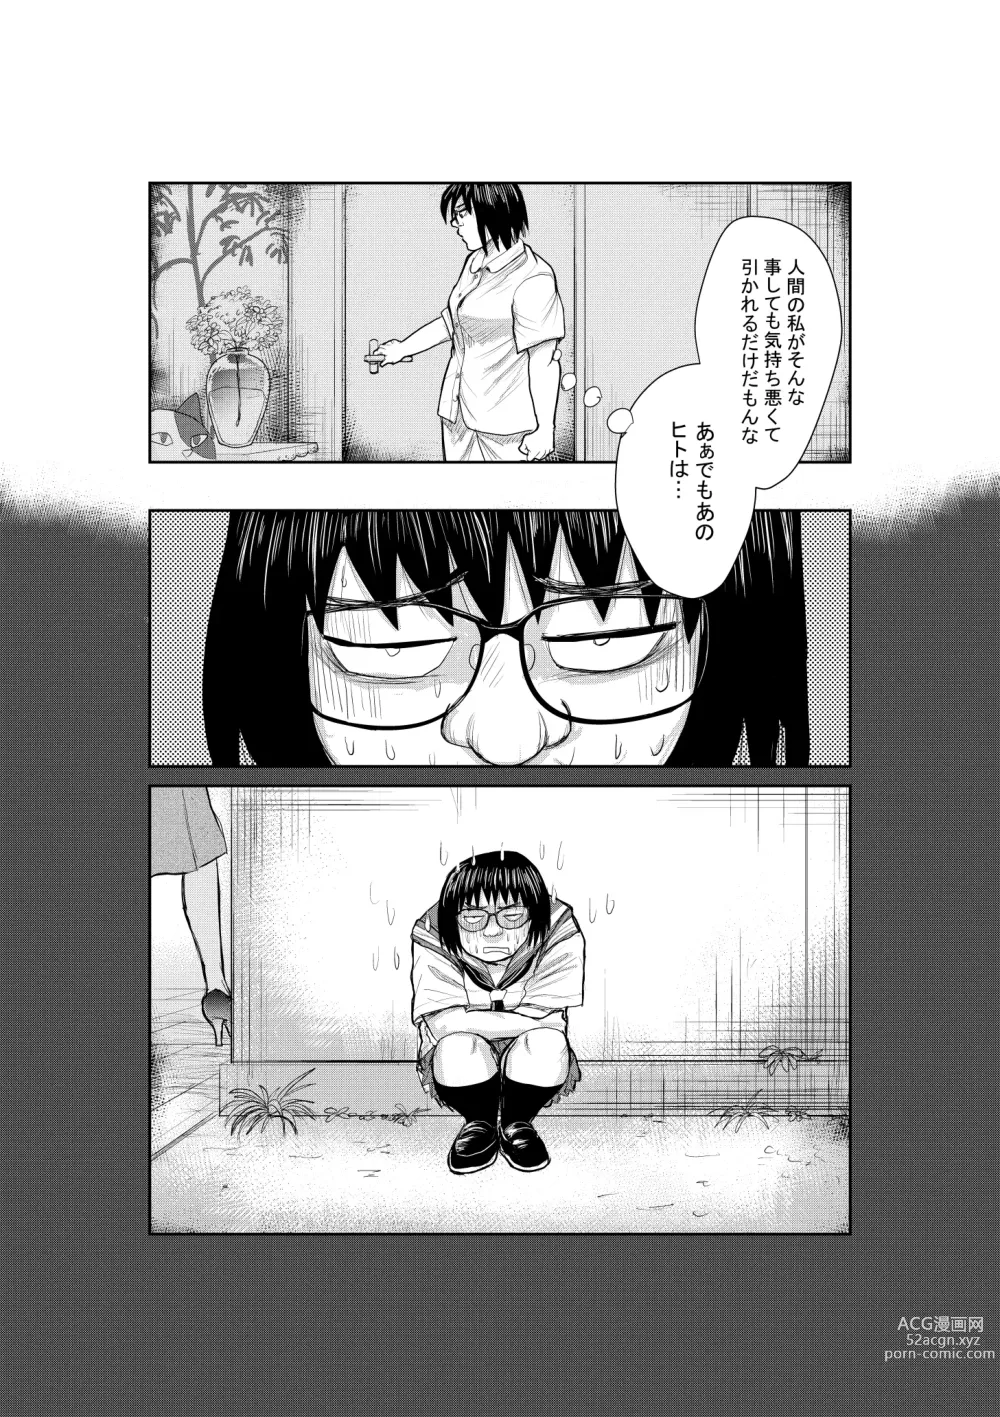 Page 13 of doujinshi Neko